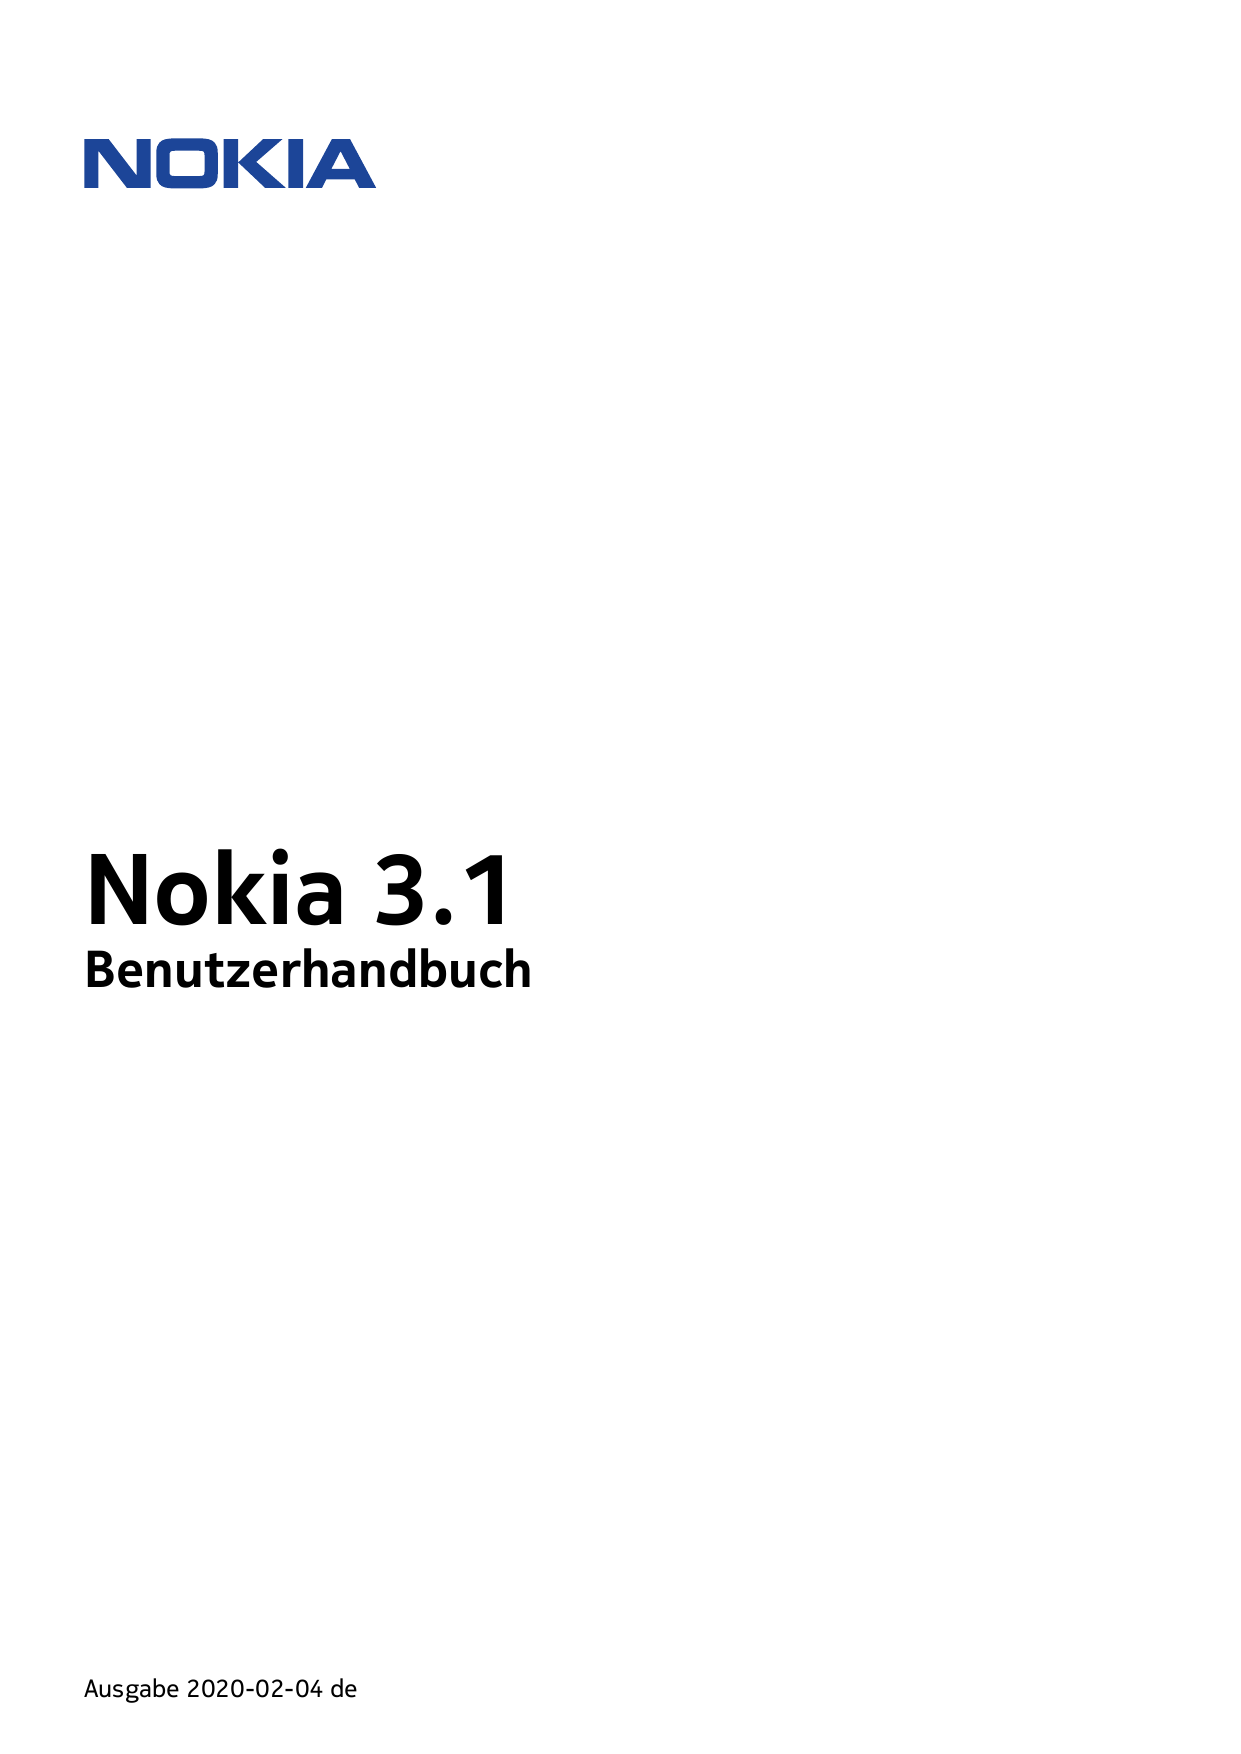 Nokia 3.1BenutzerhandbuchAusgabe 2020-02-04 de